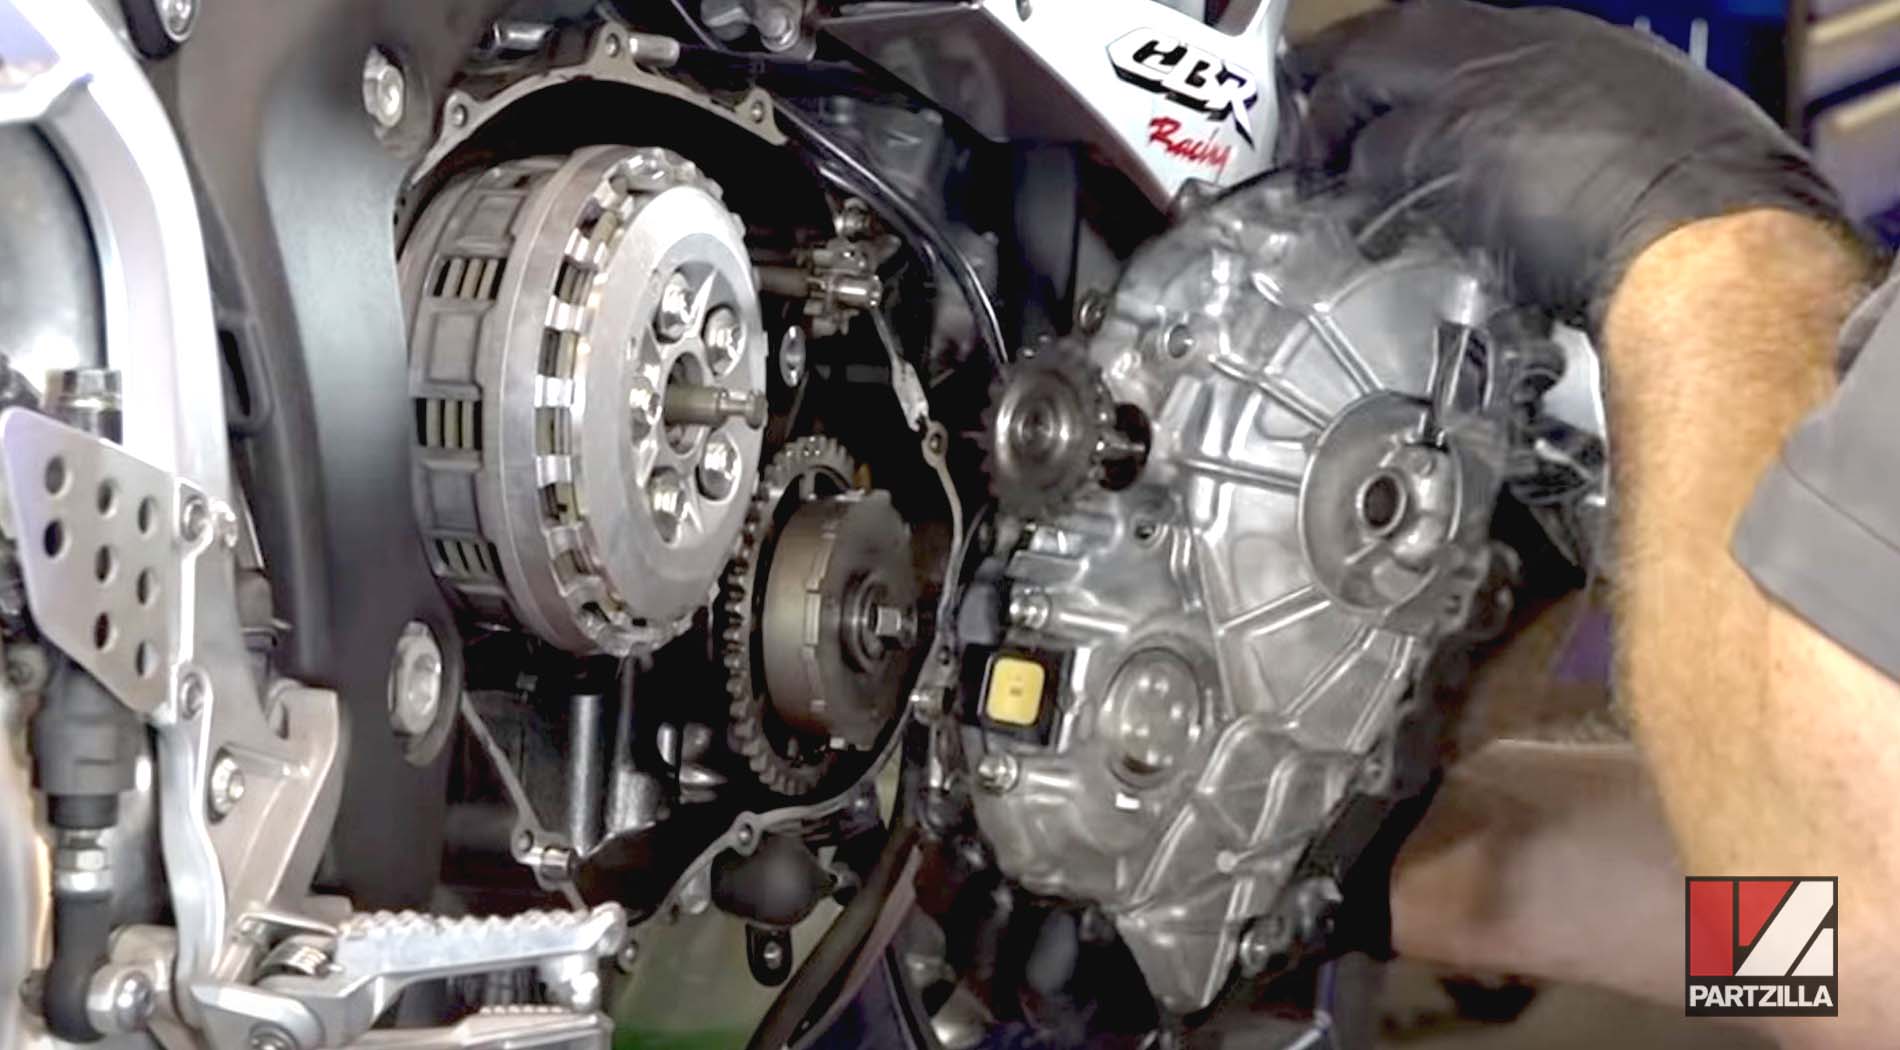 Honda CBR600 clutch rebuild cover